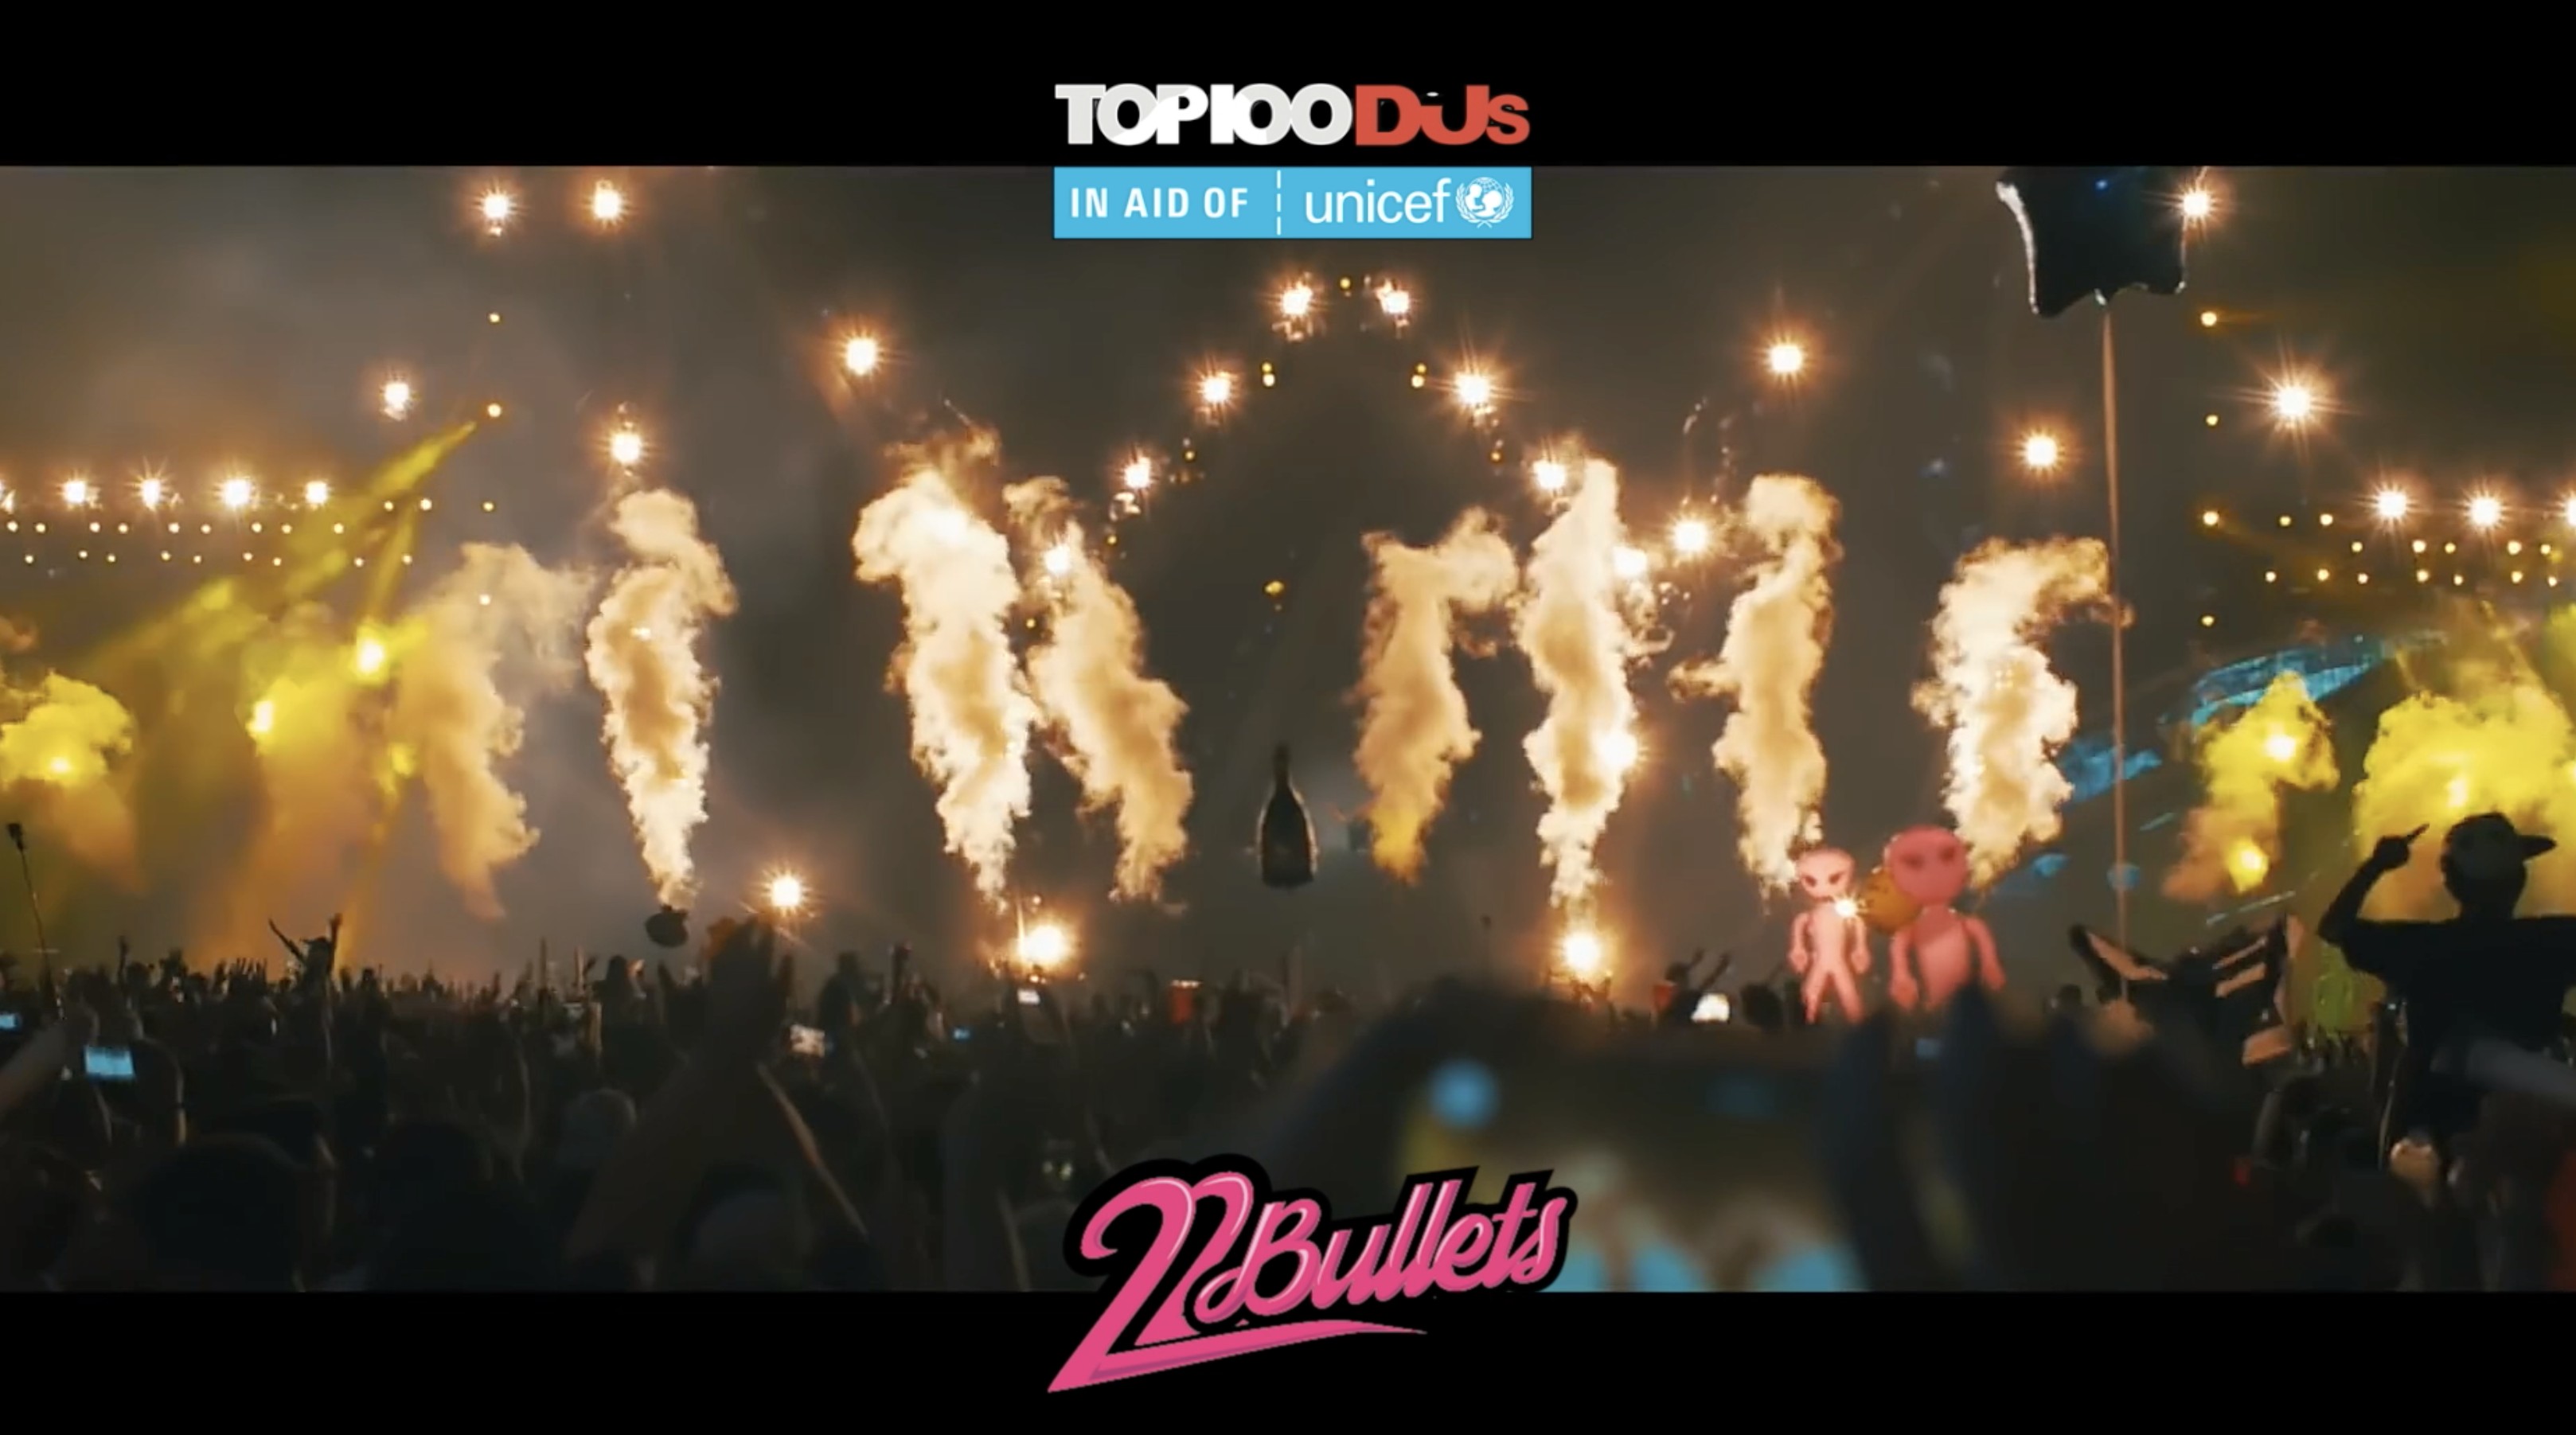 22 Bullets DJ MAG Video 2019 